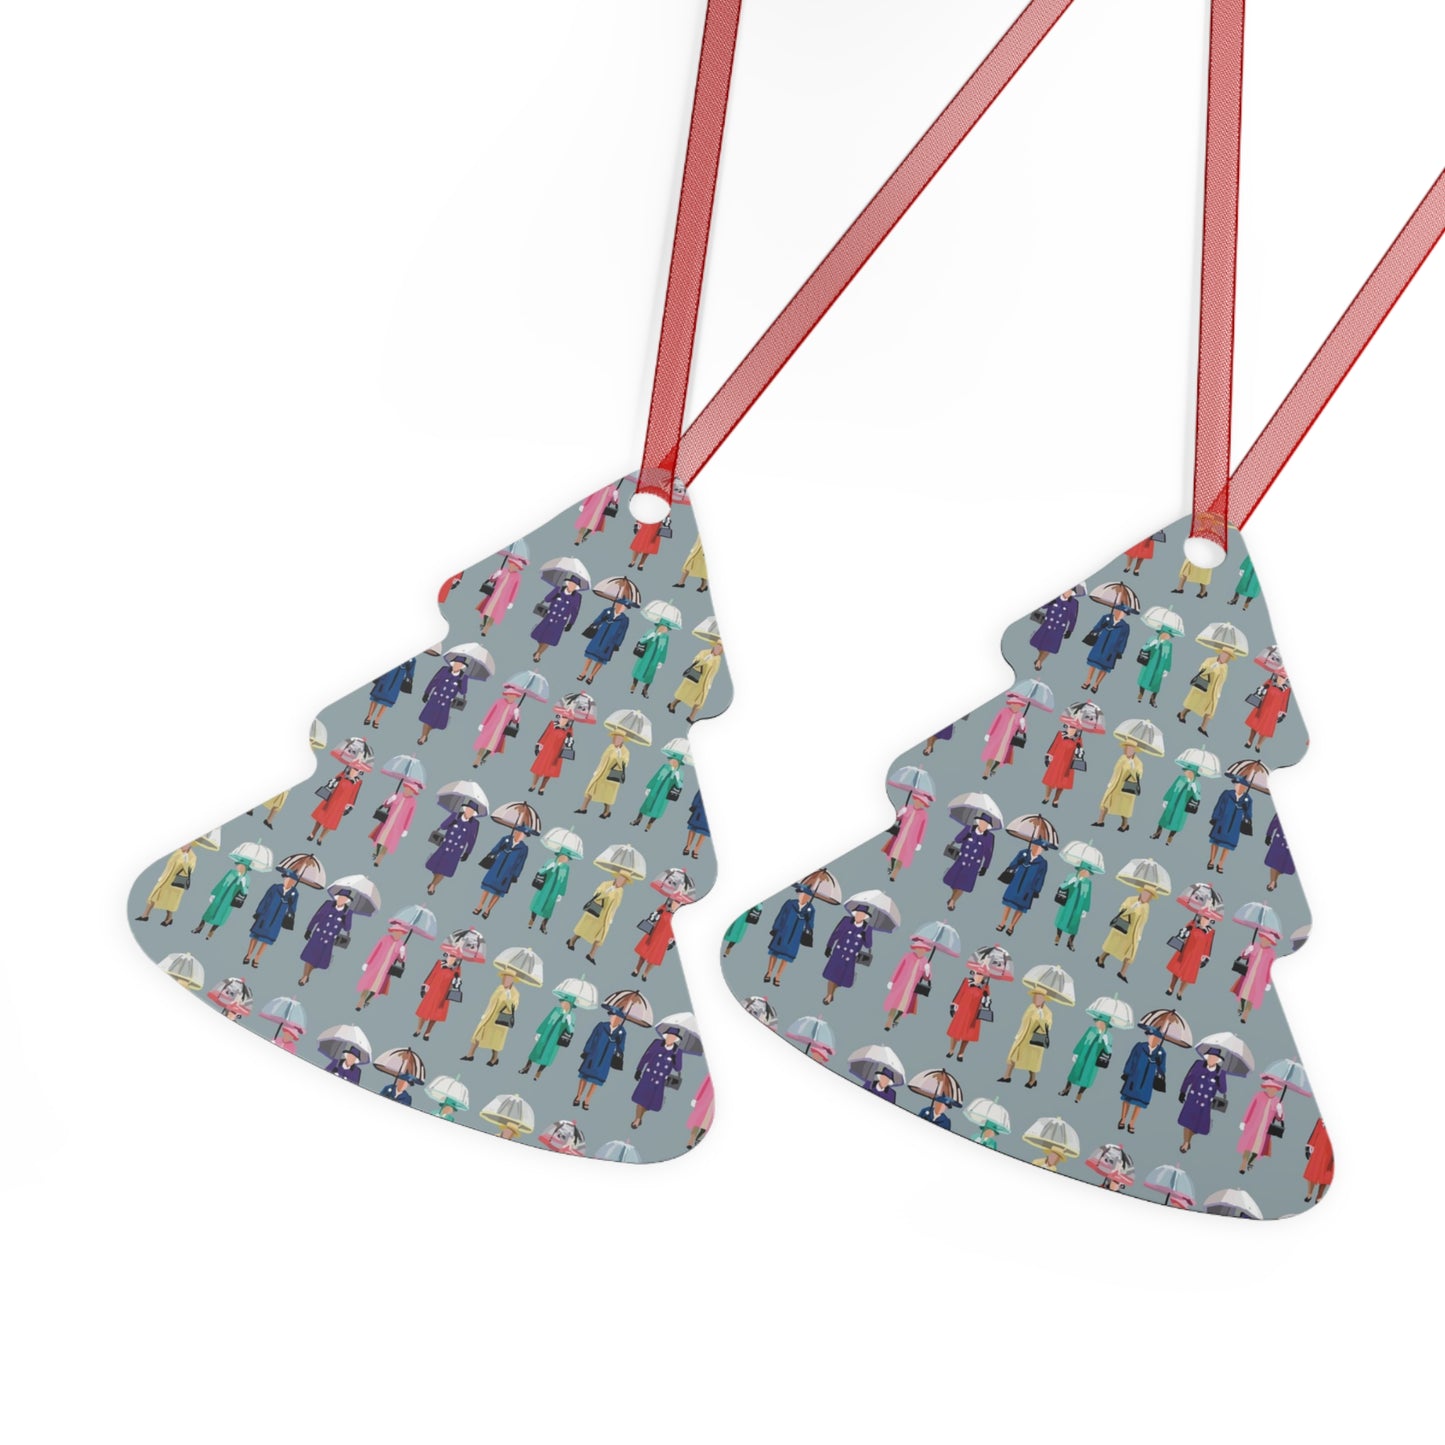 Umbrella Queen Metal Ornaments